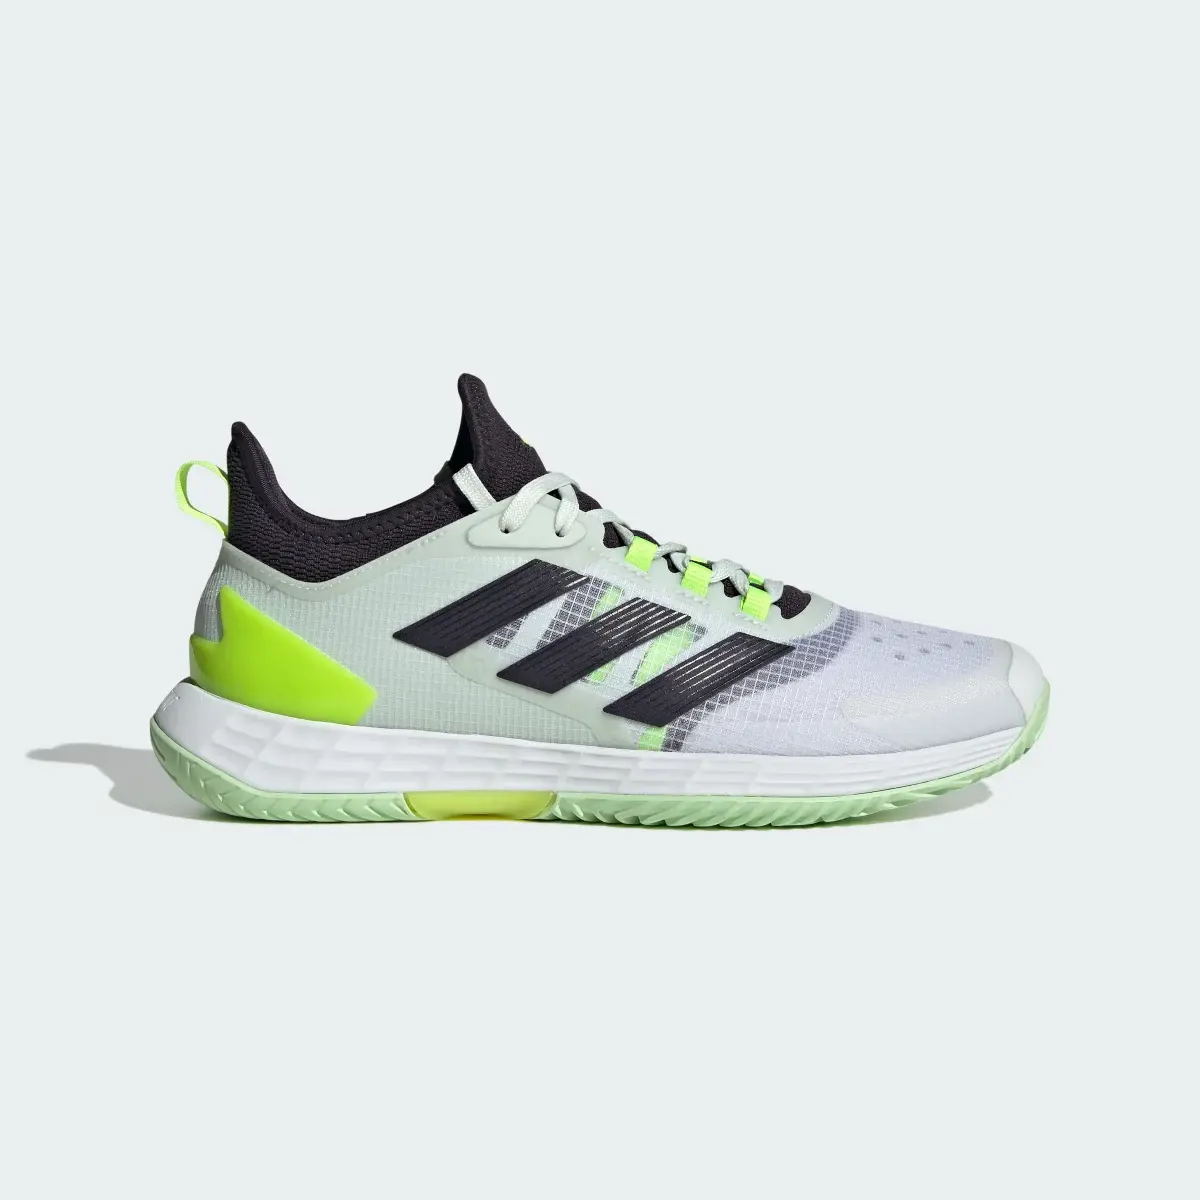 Adidas Adizero Ubersonic 4.1 Tenis Ayakkabısı. 2